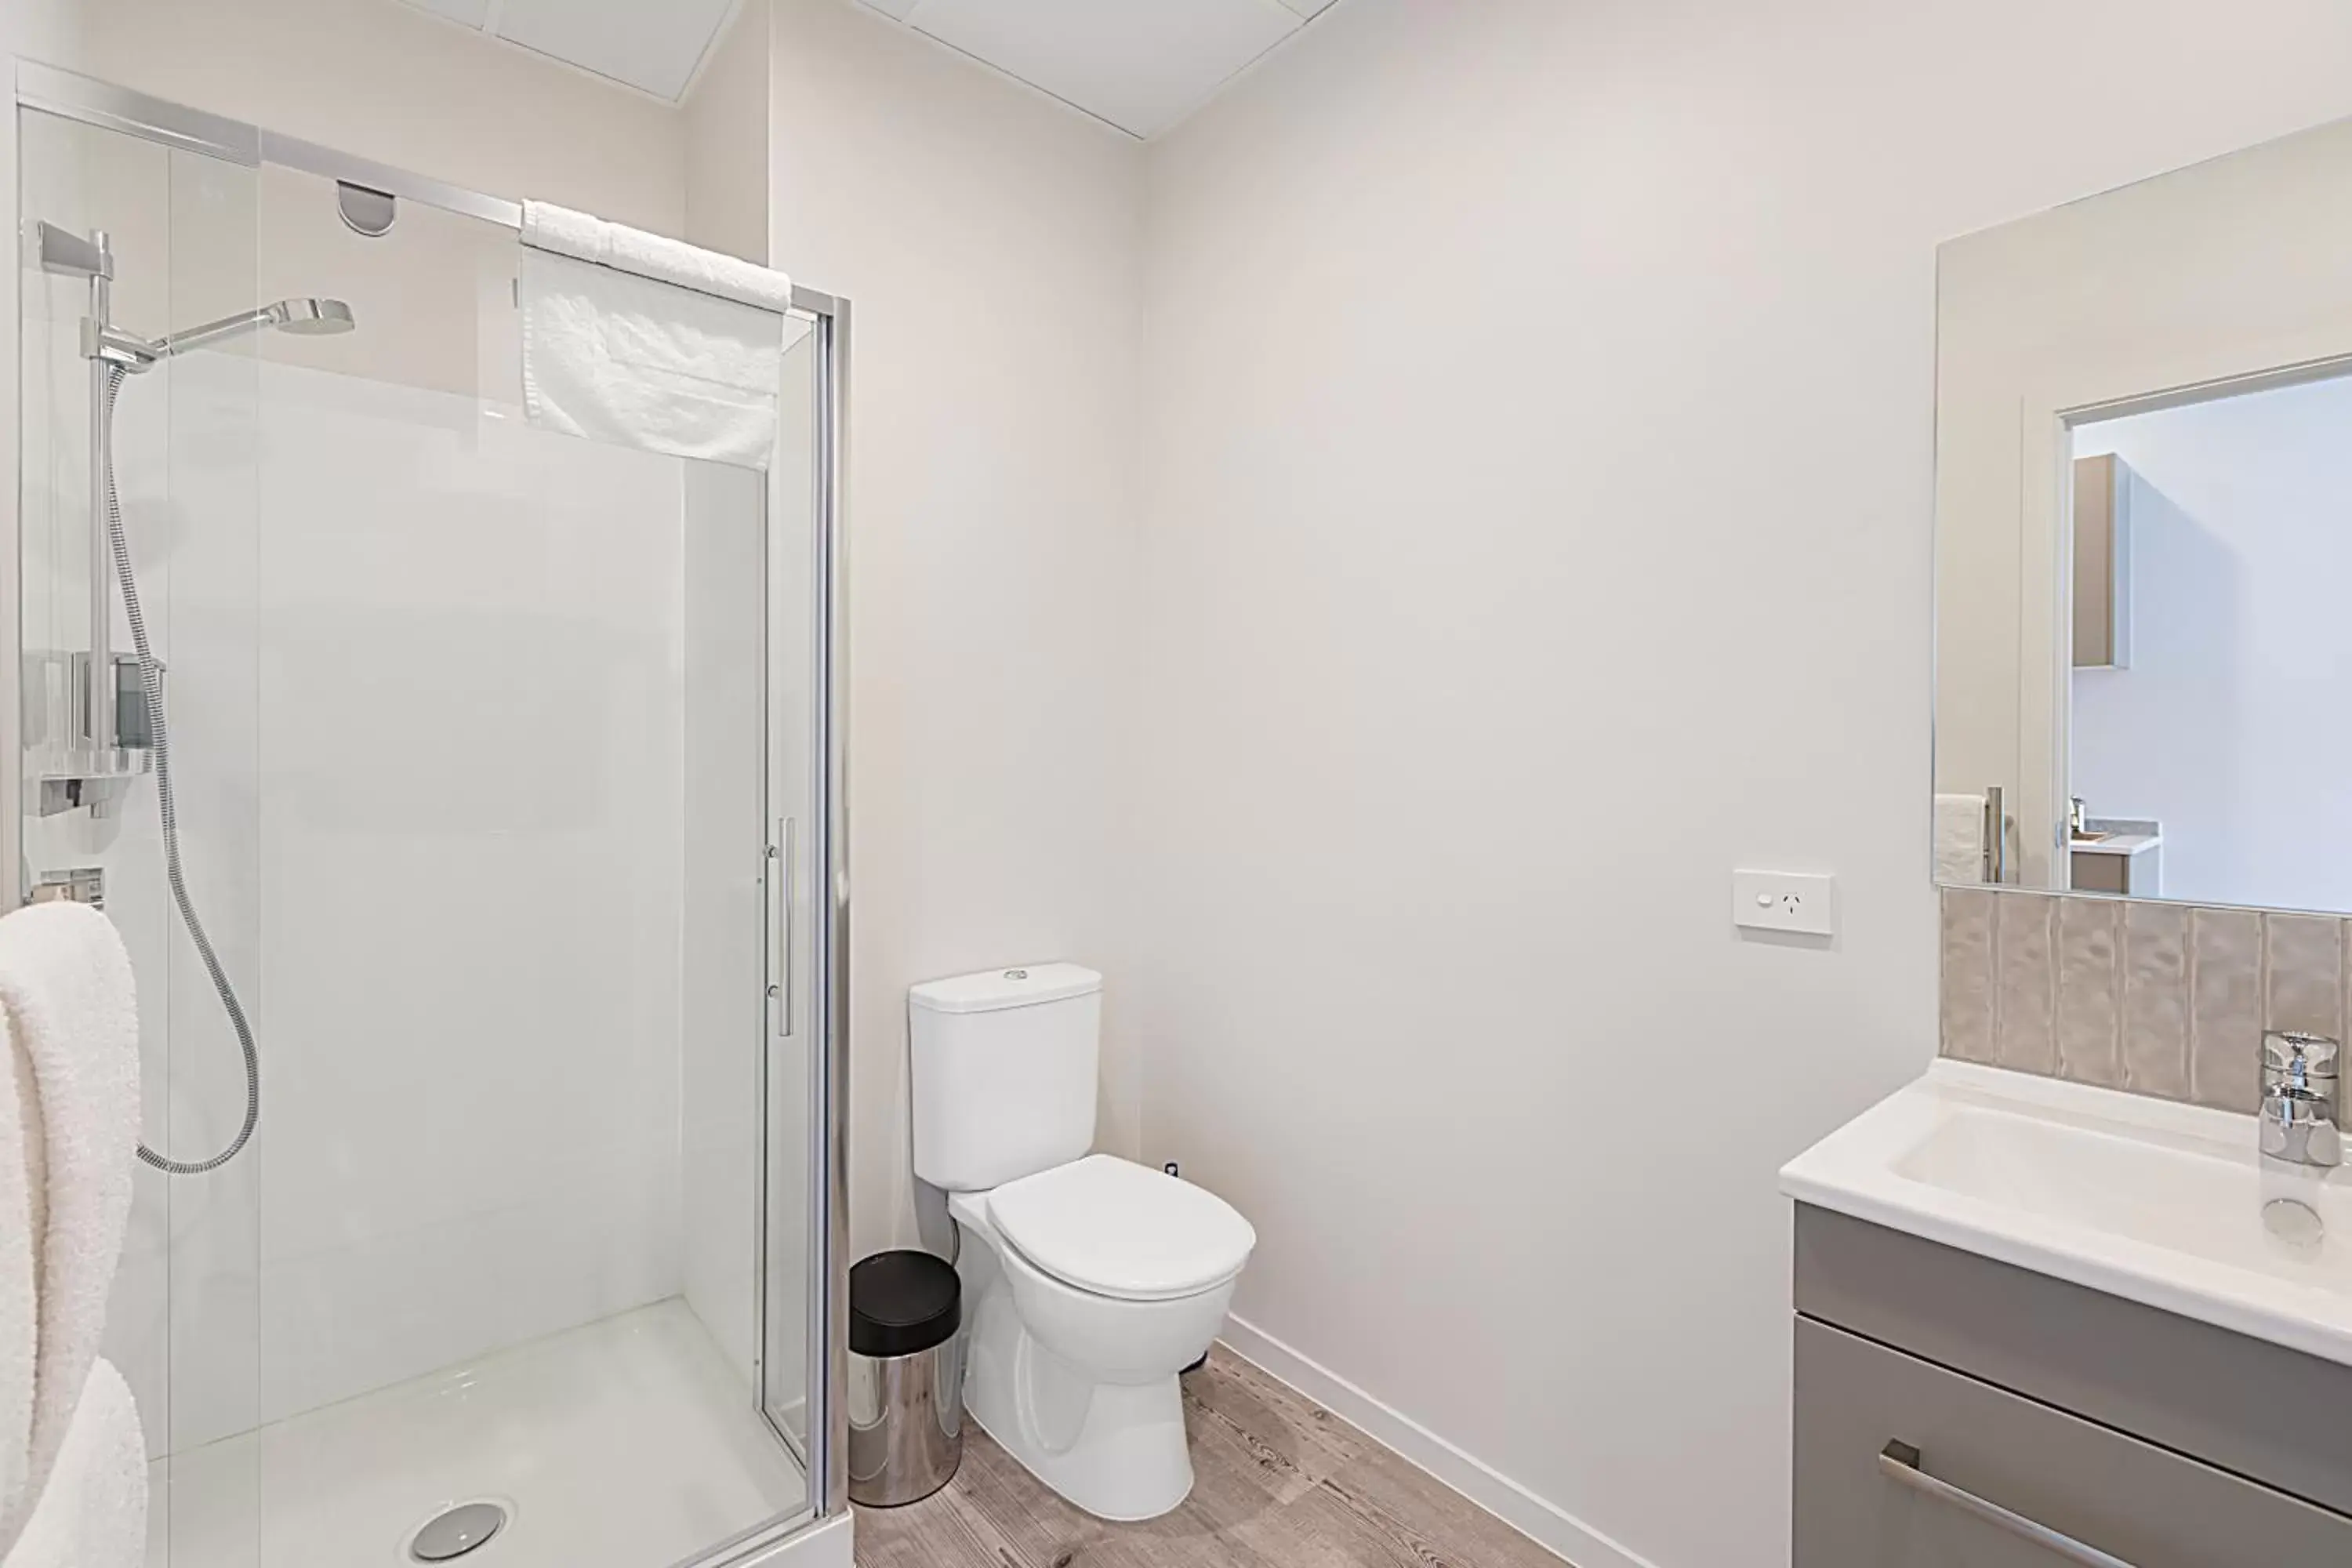 Shower, Bathroom in Ramada Suites Victoria Street West